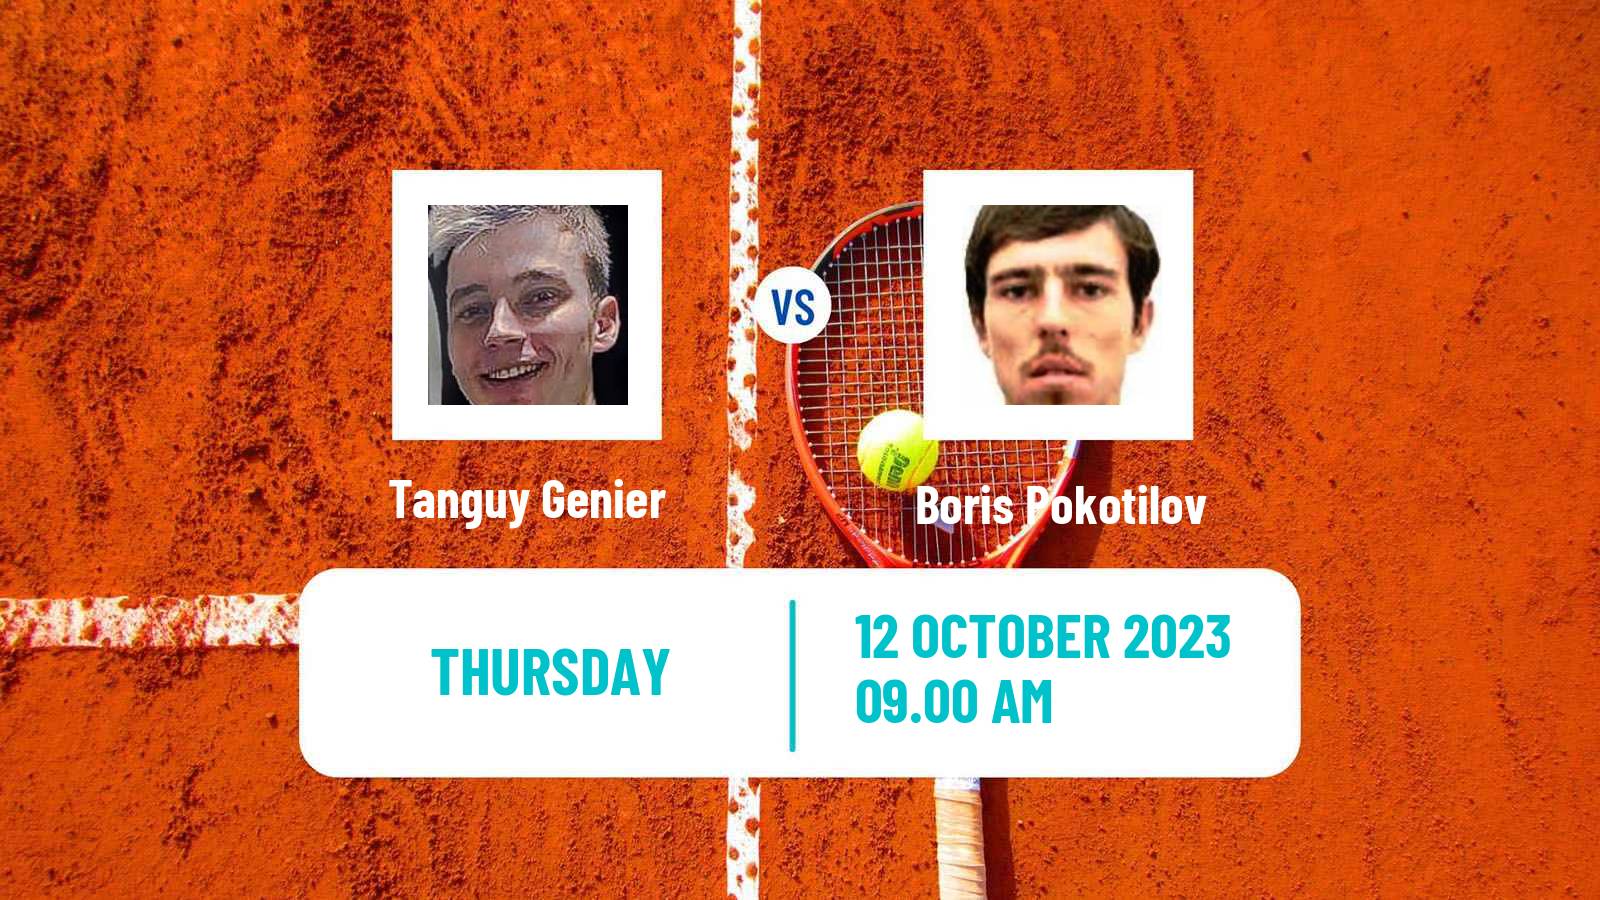 Tennis ITF M15 Doha 3 Men Tanguy Genier - Boris Pokotilov